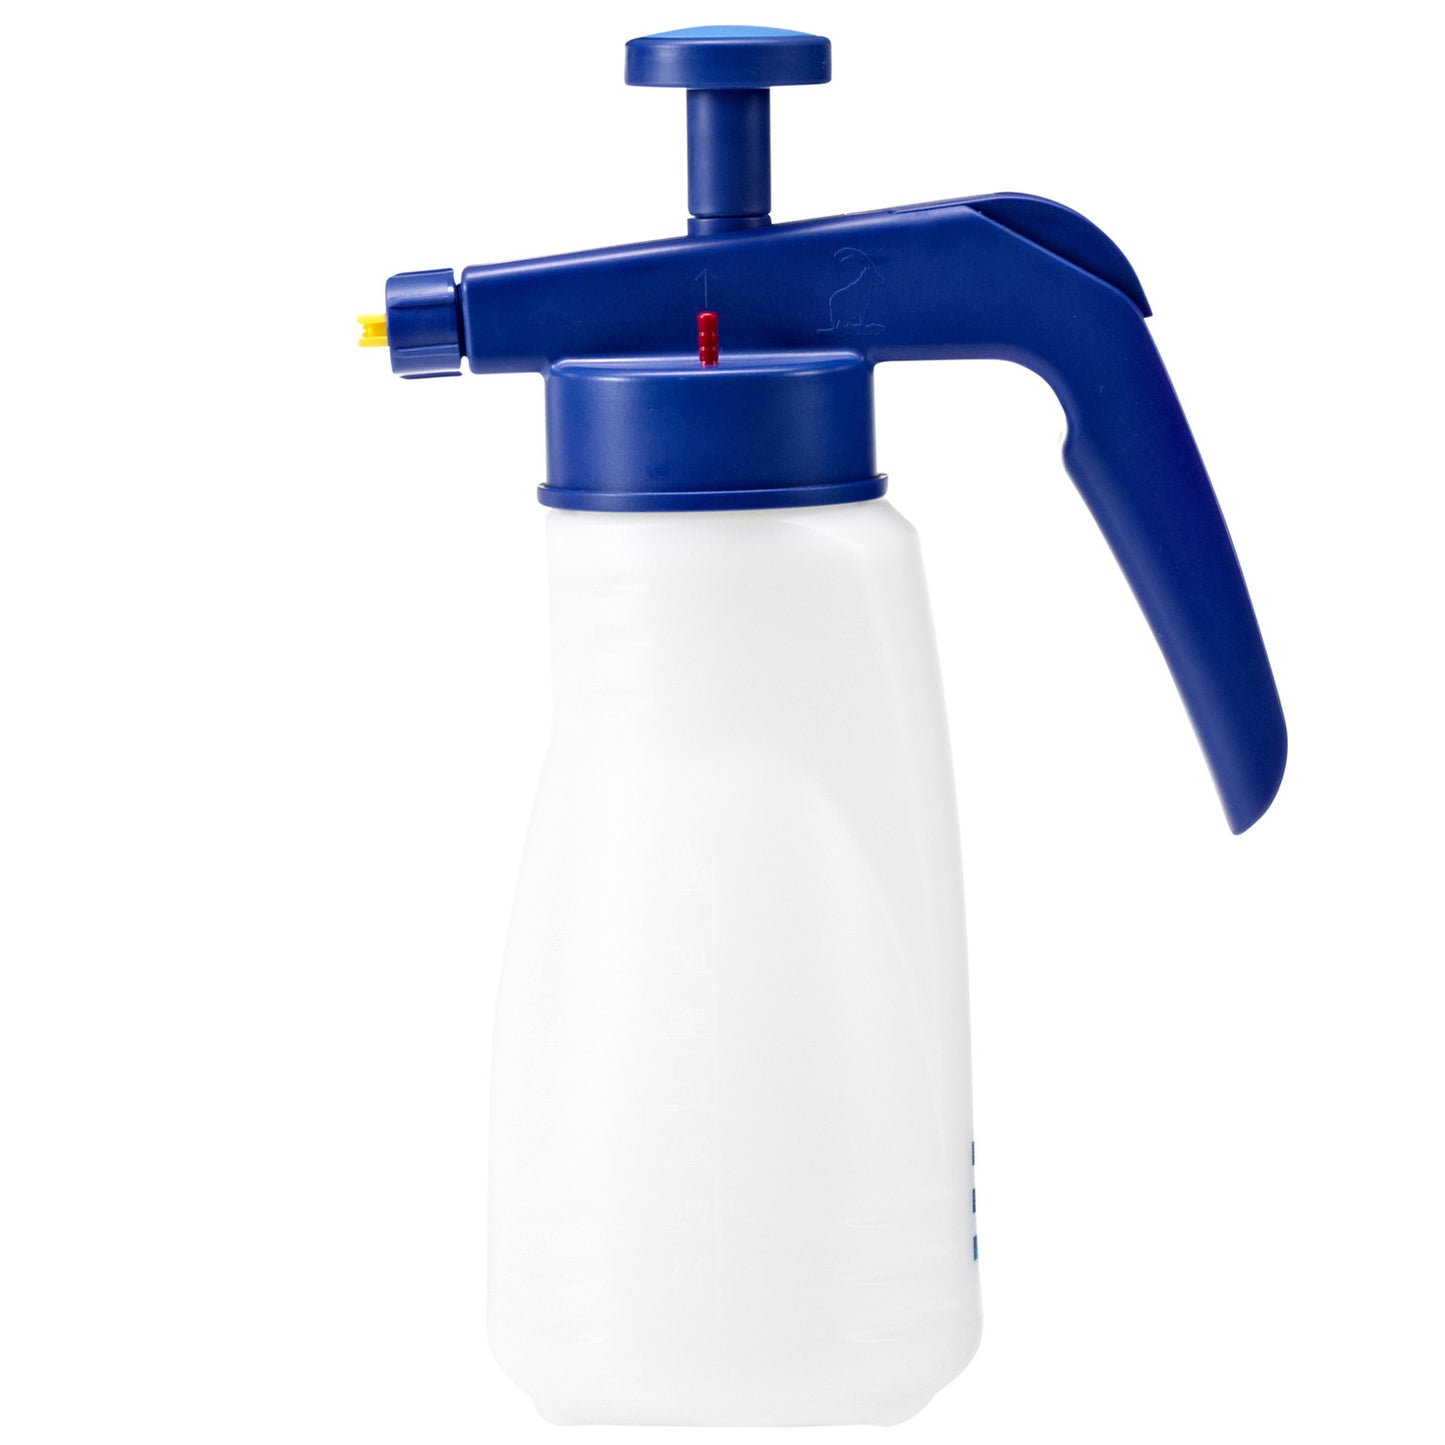 Pulverizador Profesional Para Limpiadores 1.5 Pressol Litros Sprayer Sprayfixx Alkali